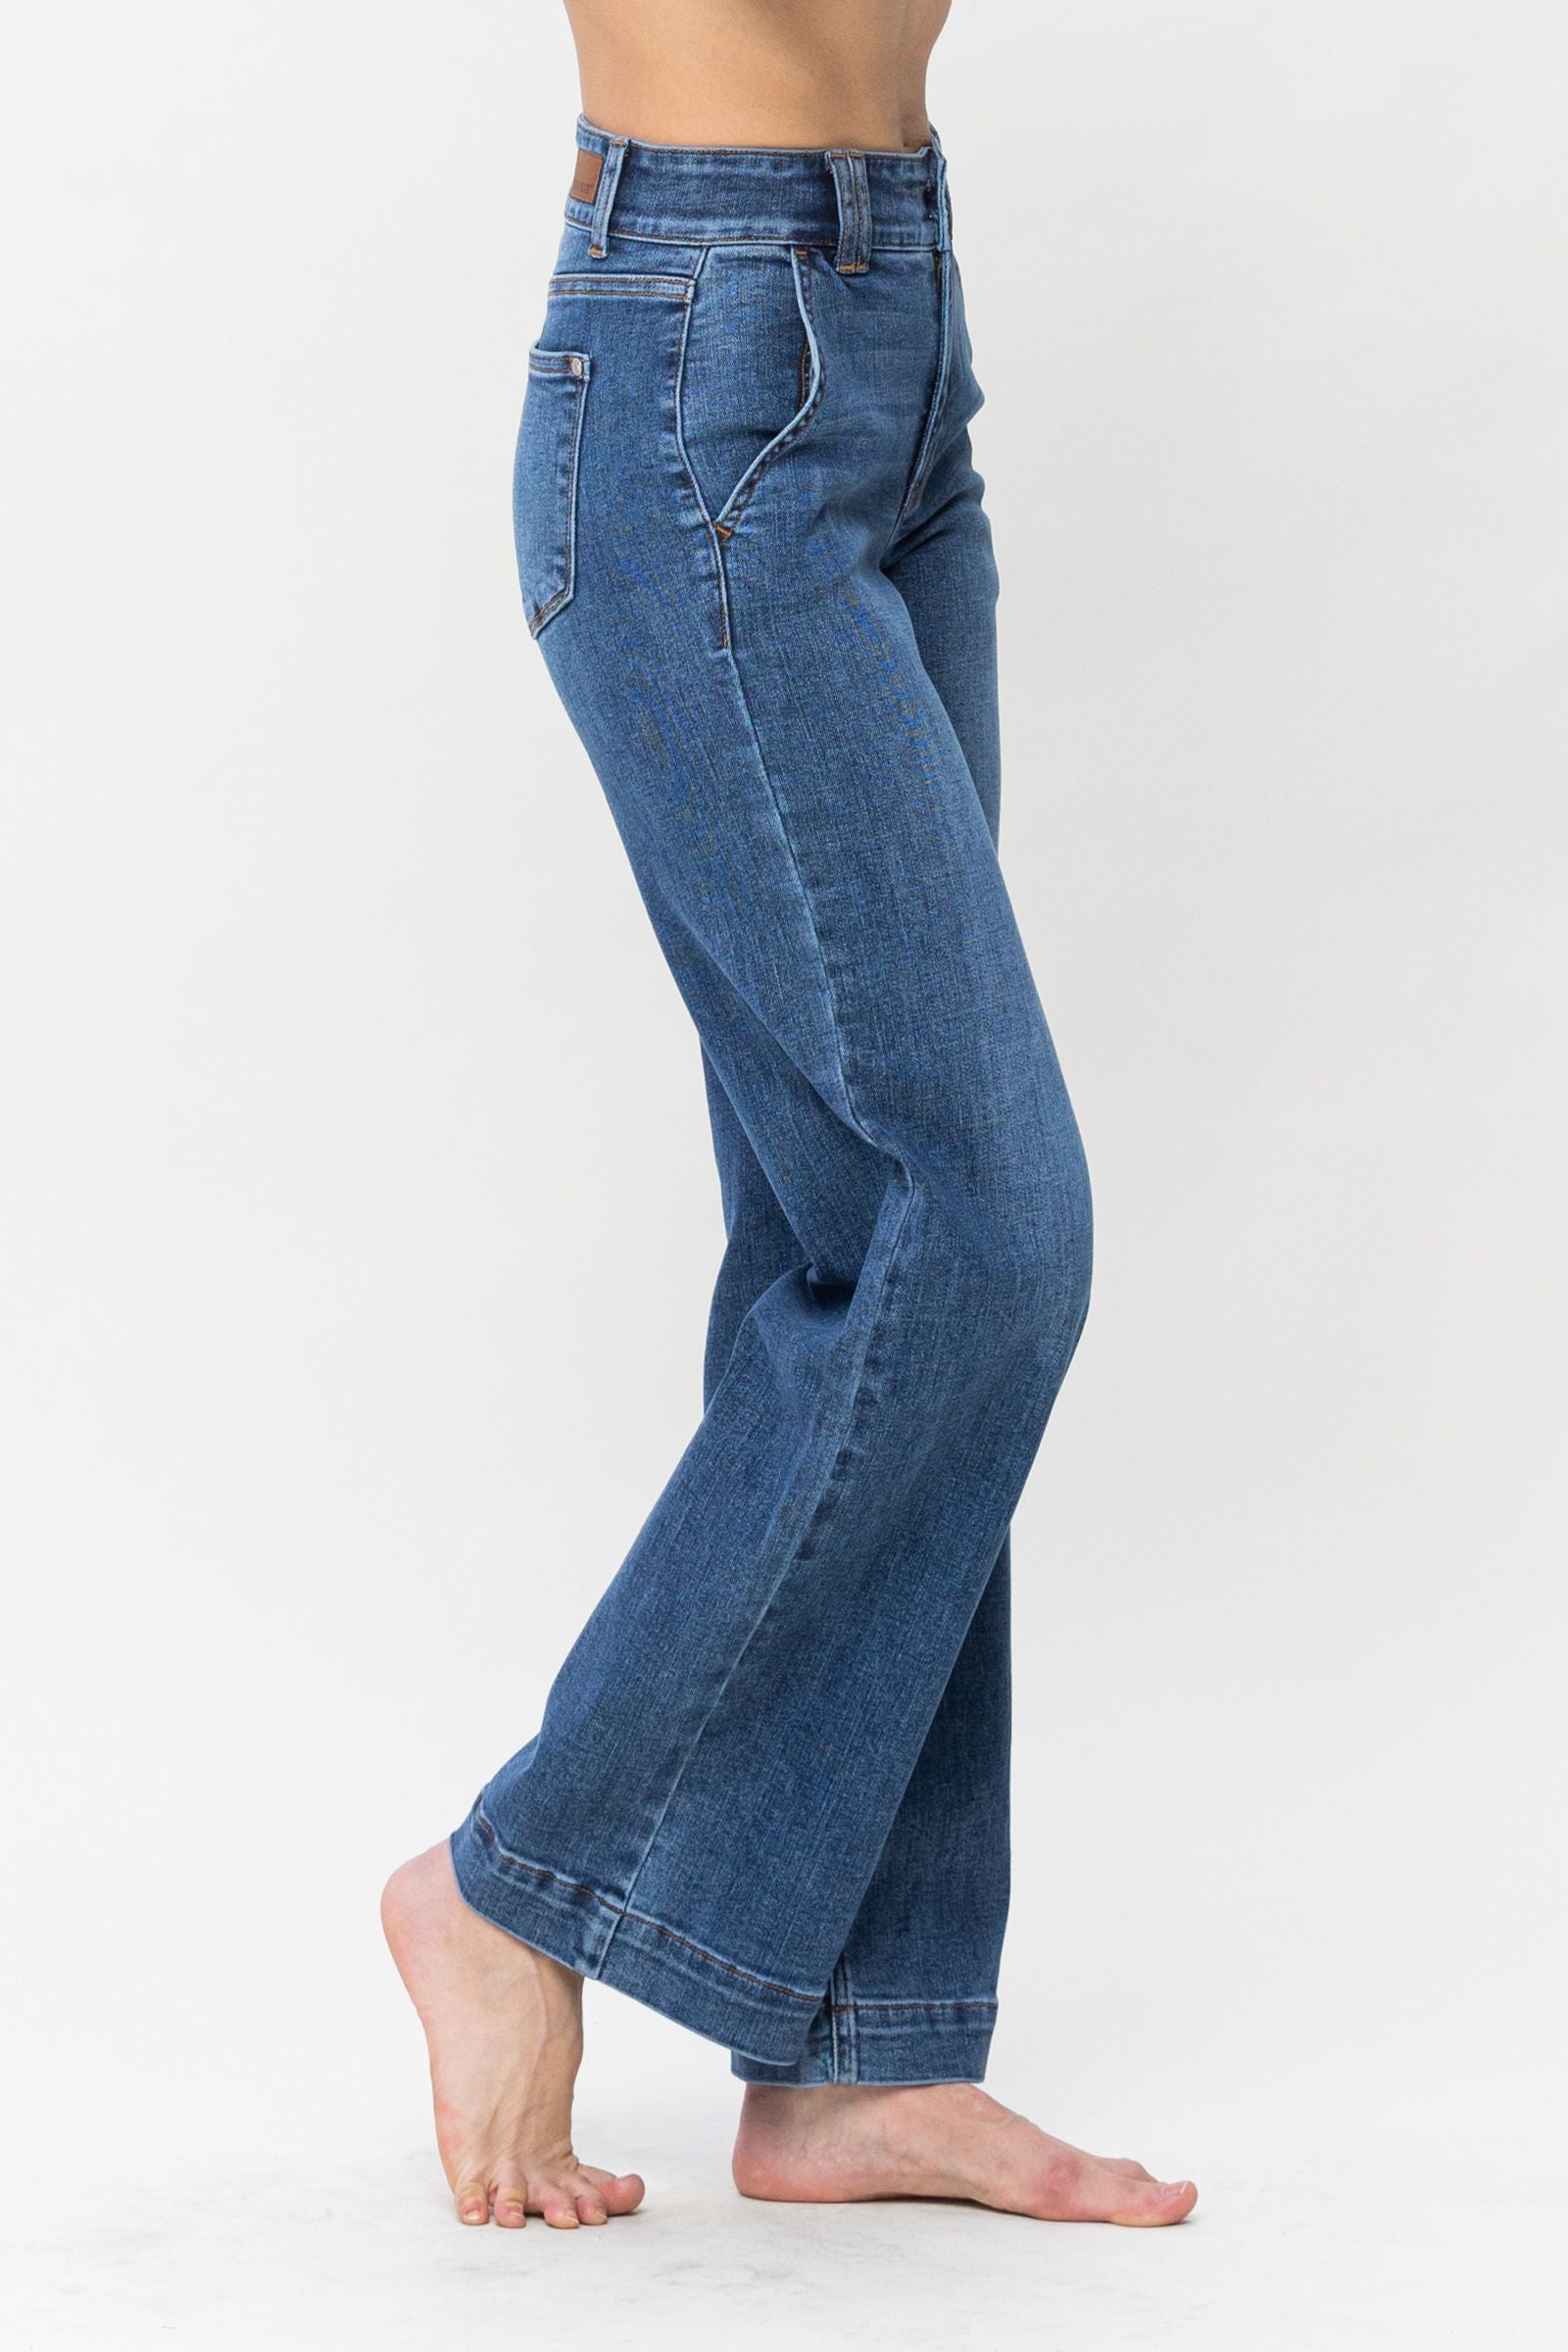 judy blue high waist double button wide leg jeans JB82558REG MD